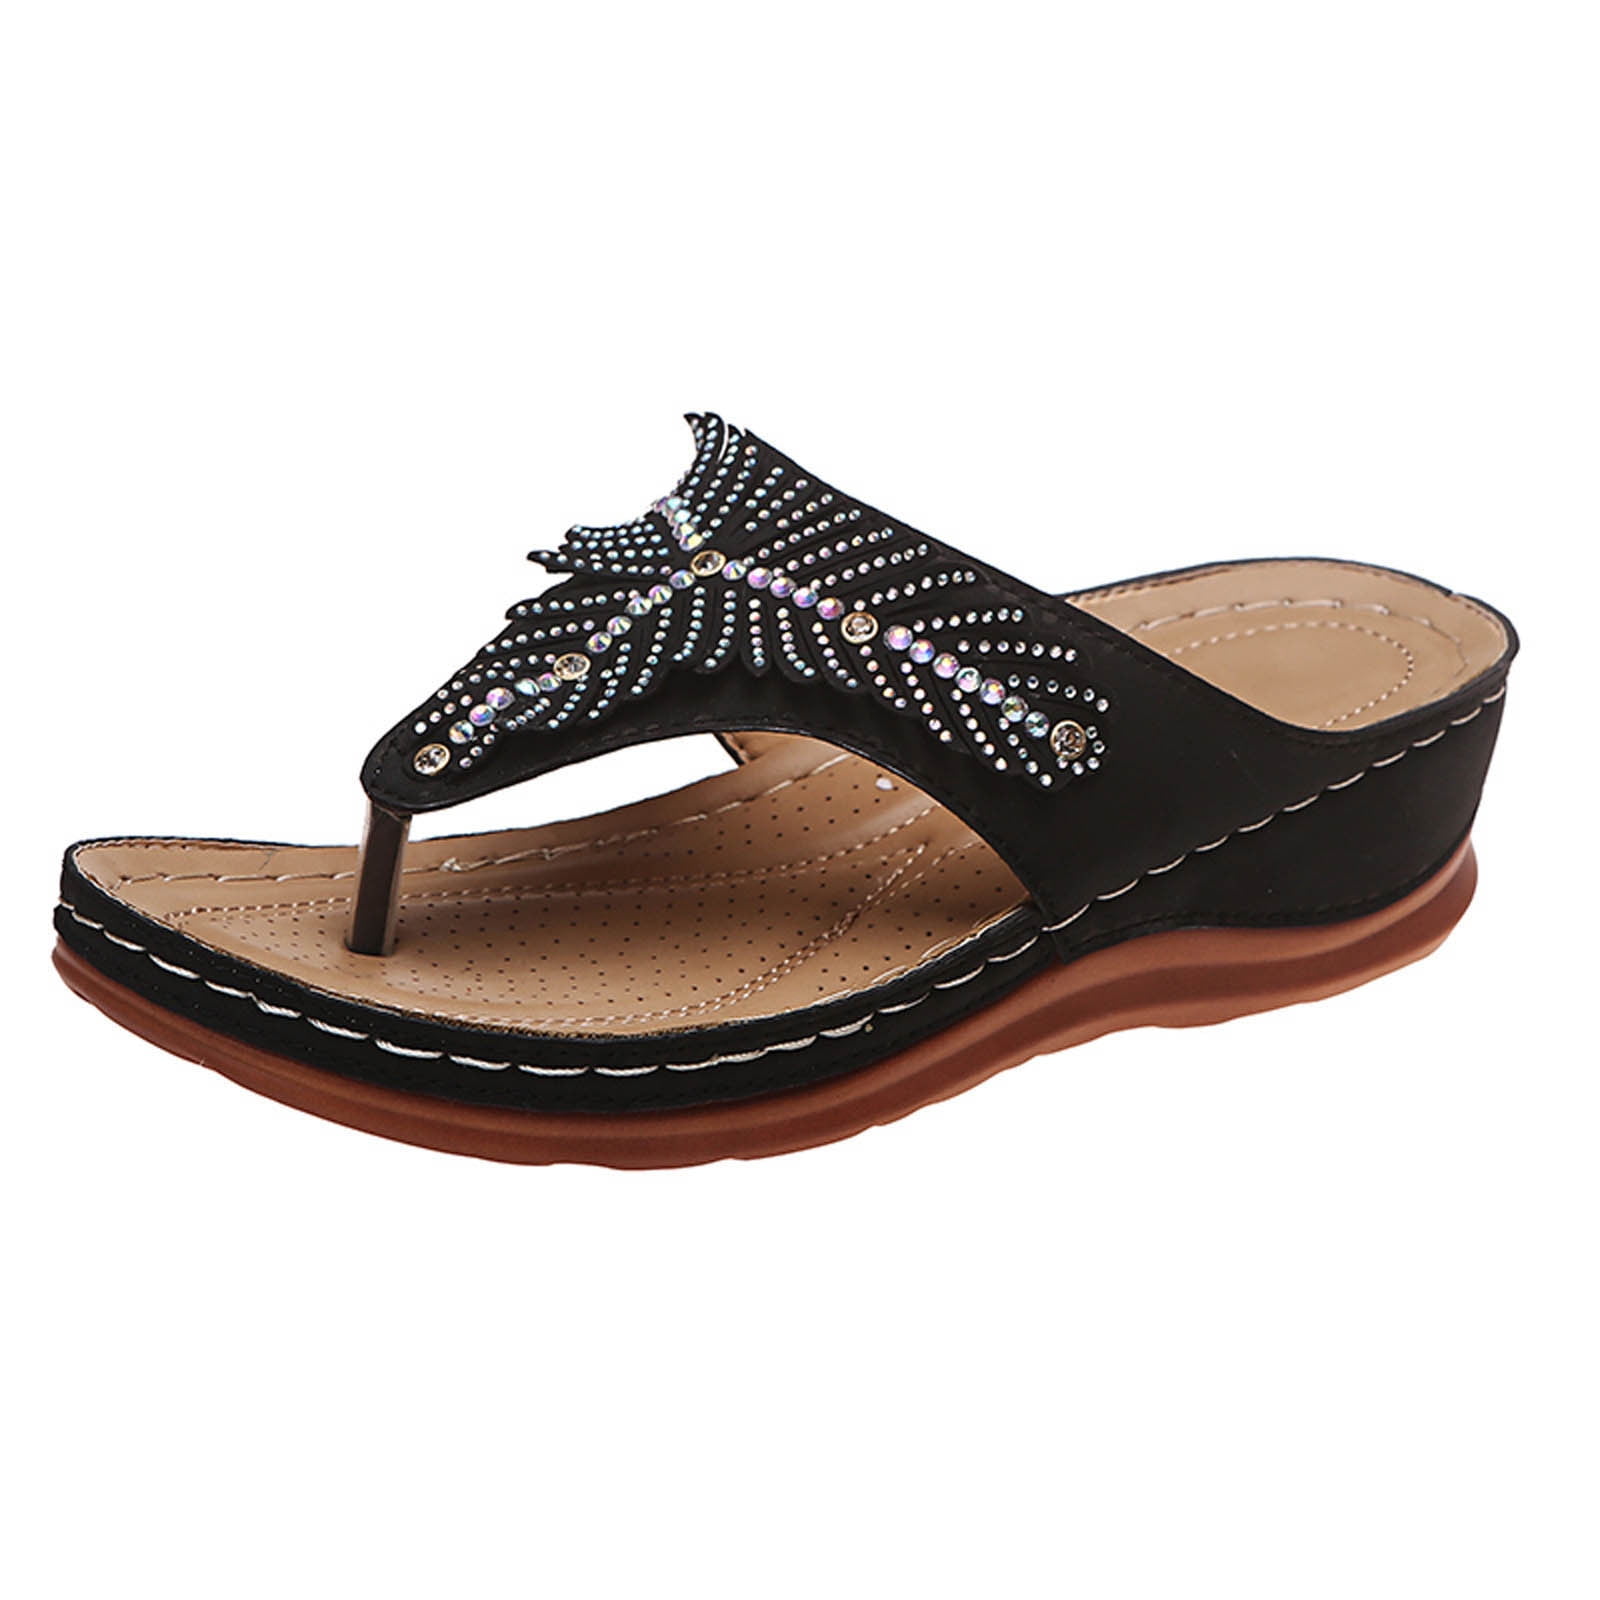 Utoimkio Ankle Straps Sandals for Women Summer Ladies Flip Flops Wedge ...